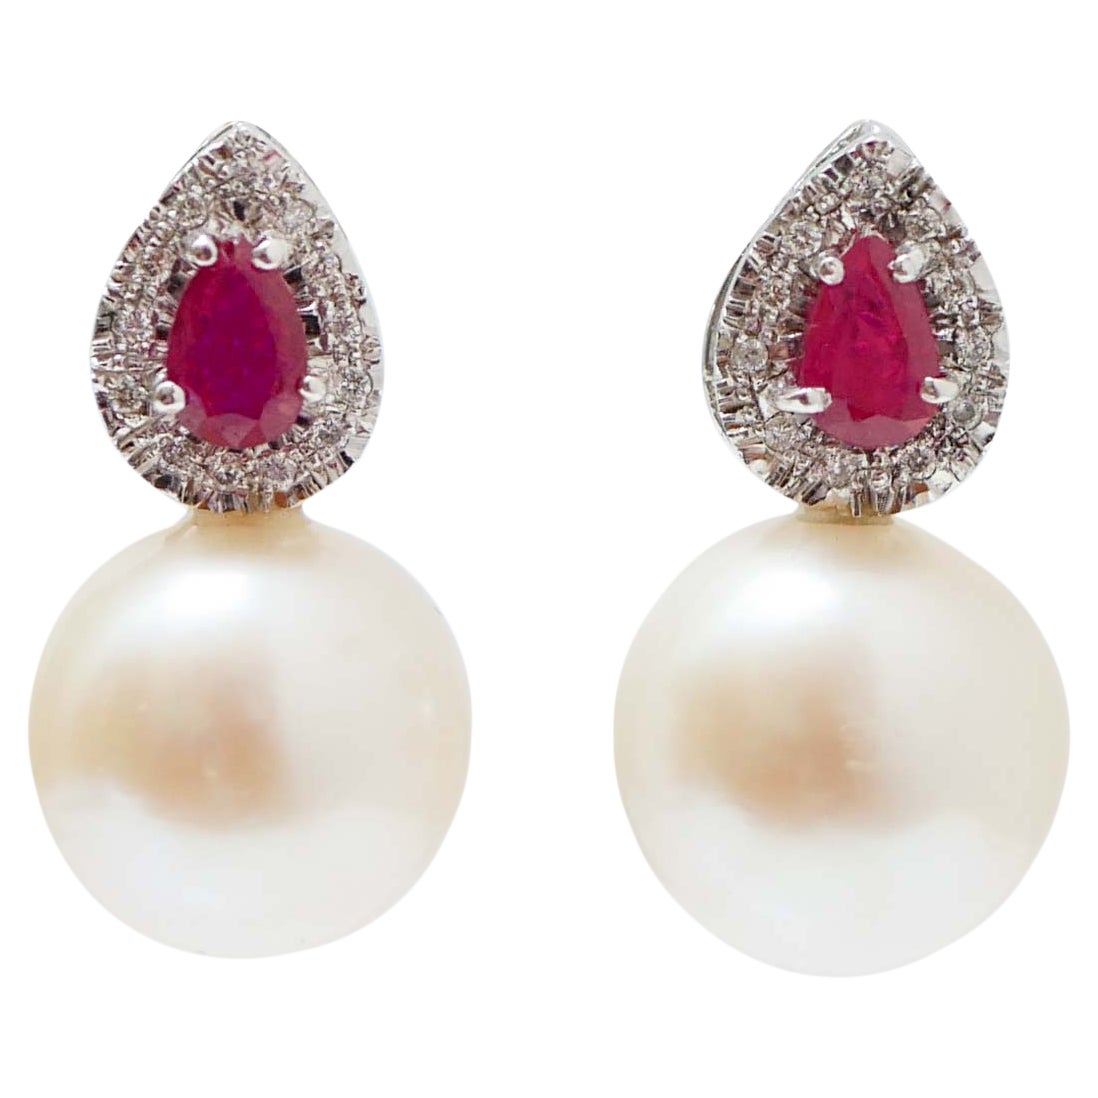 Boucles d'oreilles en platine, rubis, diamants et perles blanches